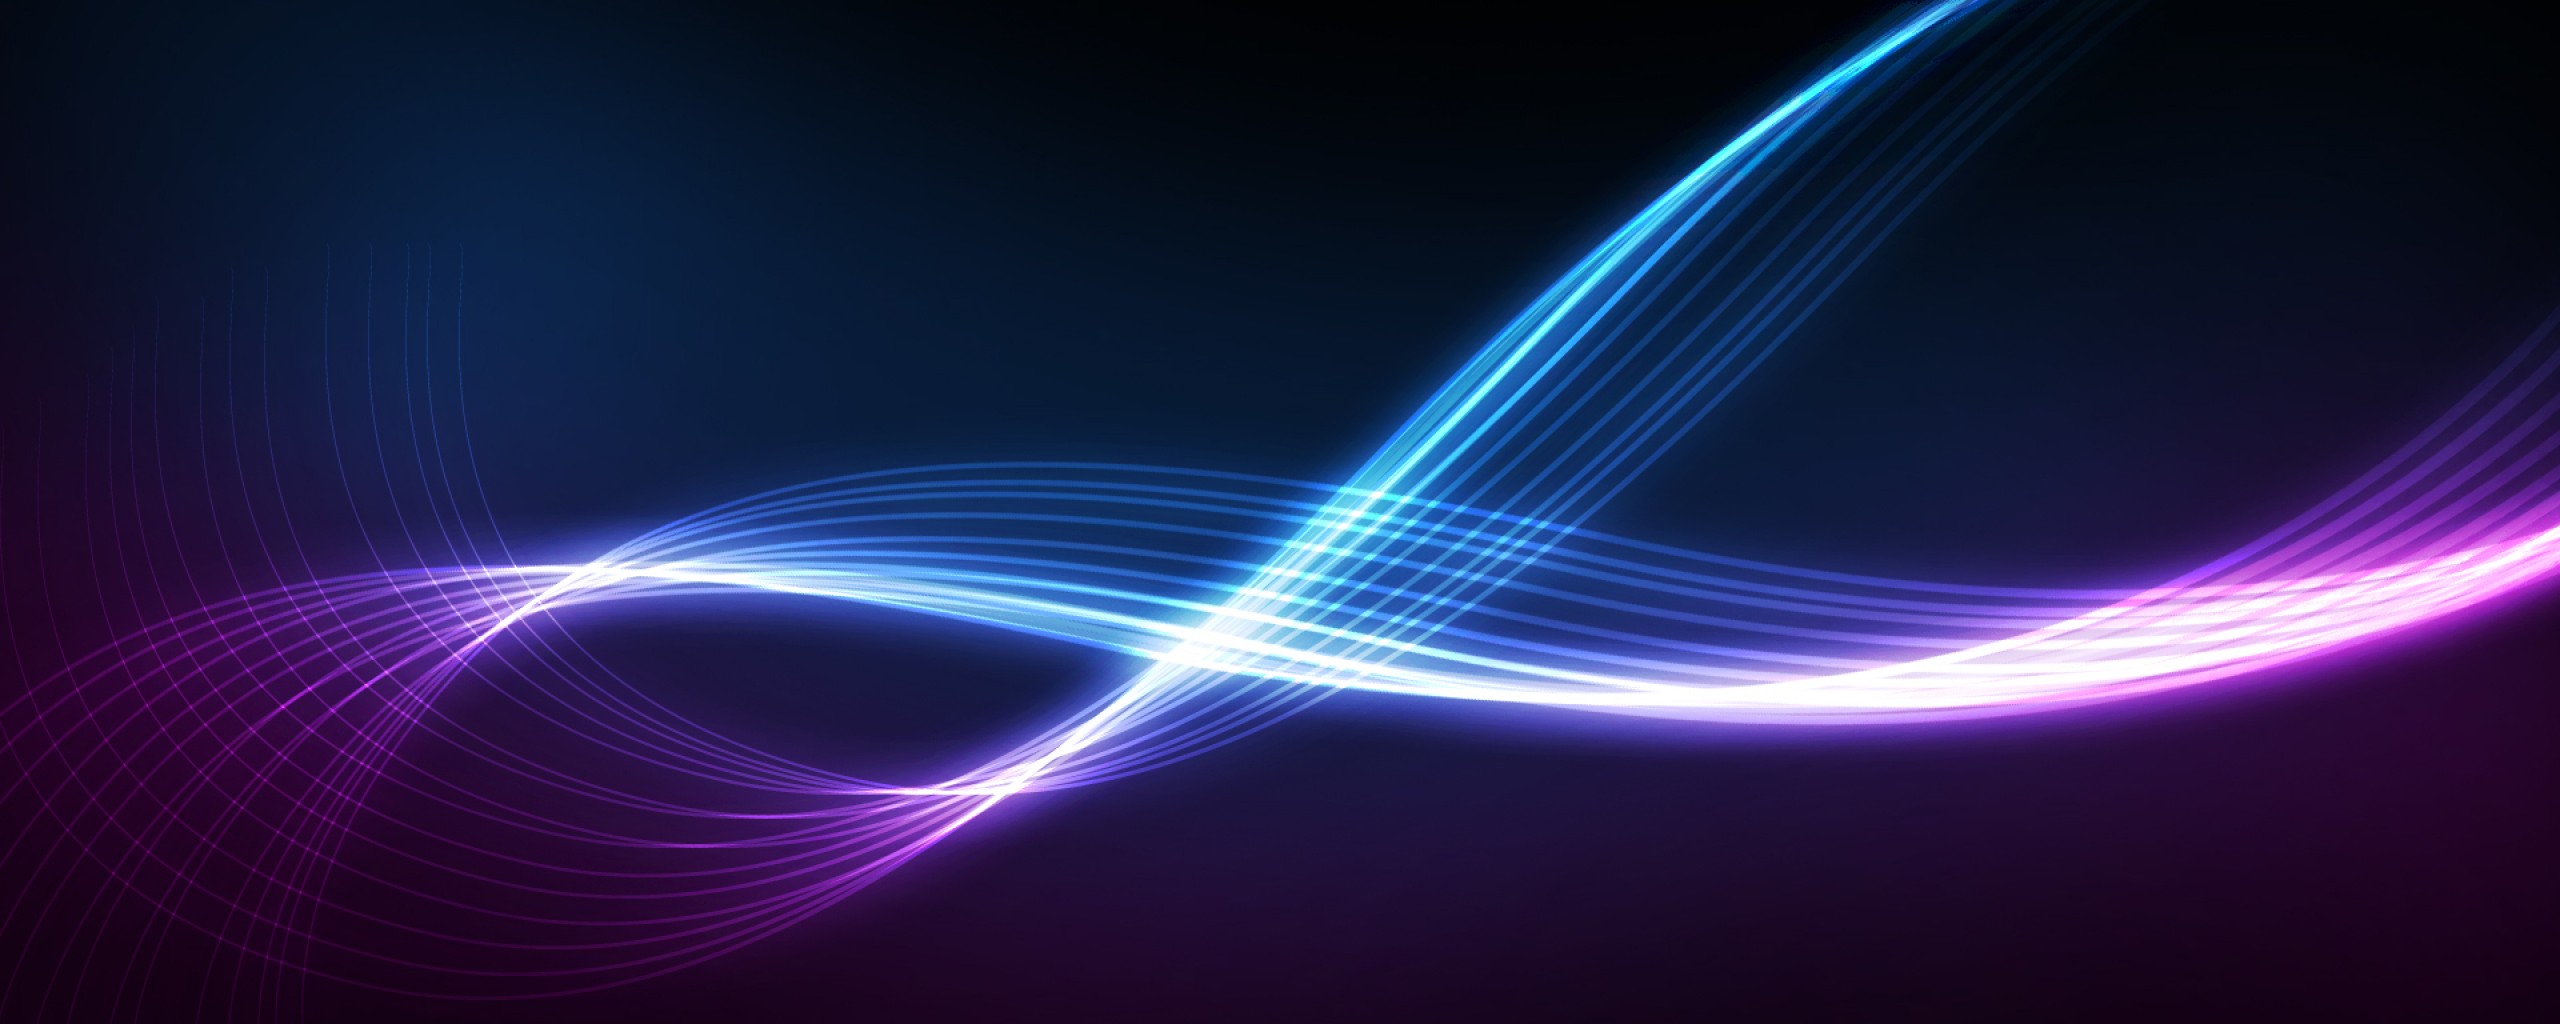 fond d'écran bleu et violet,bleu,lumière,violet,violet,bleu électrique